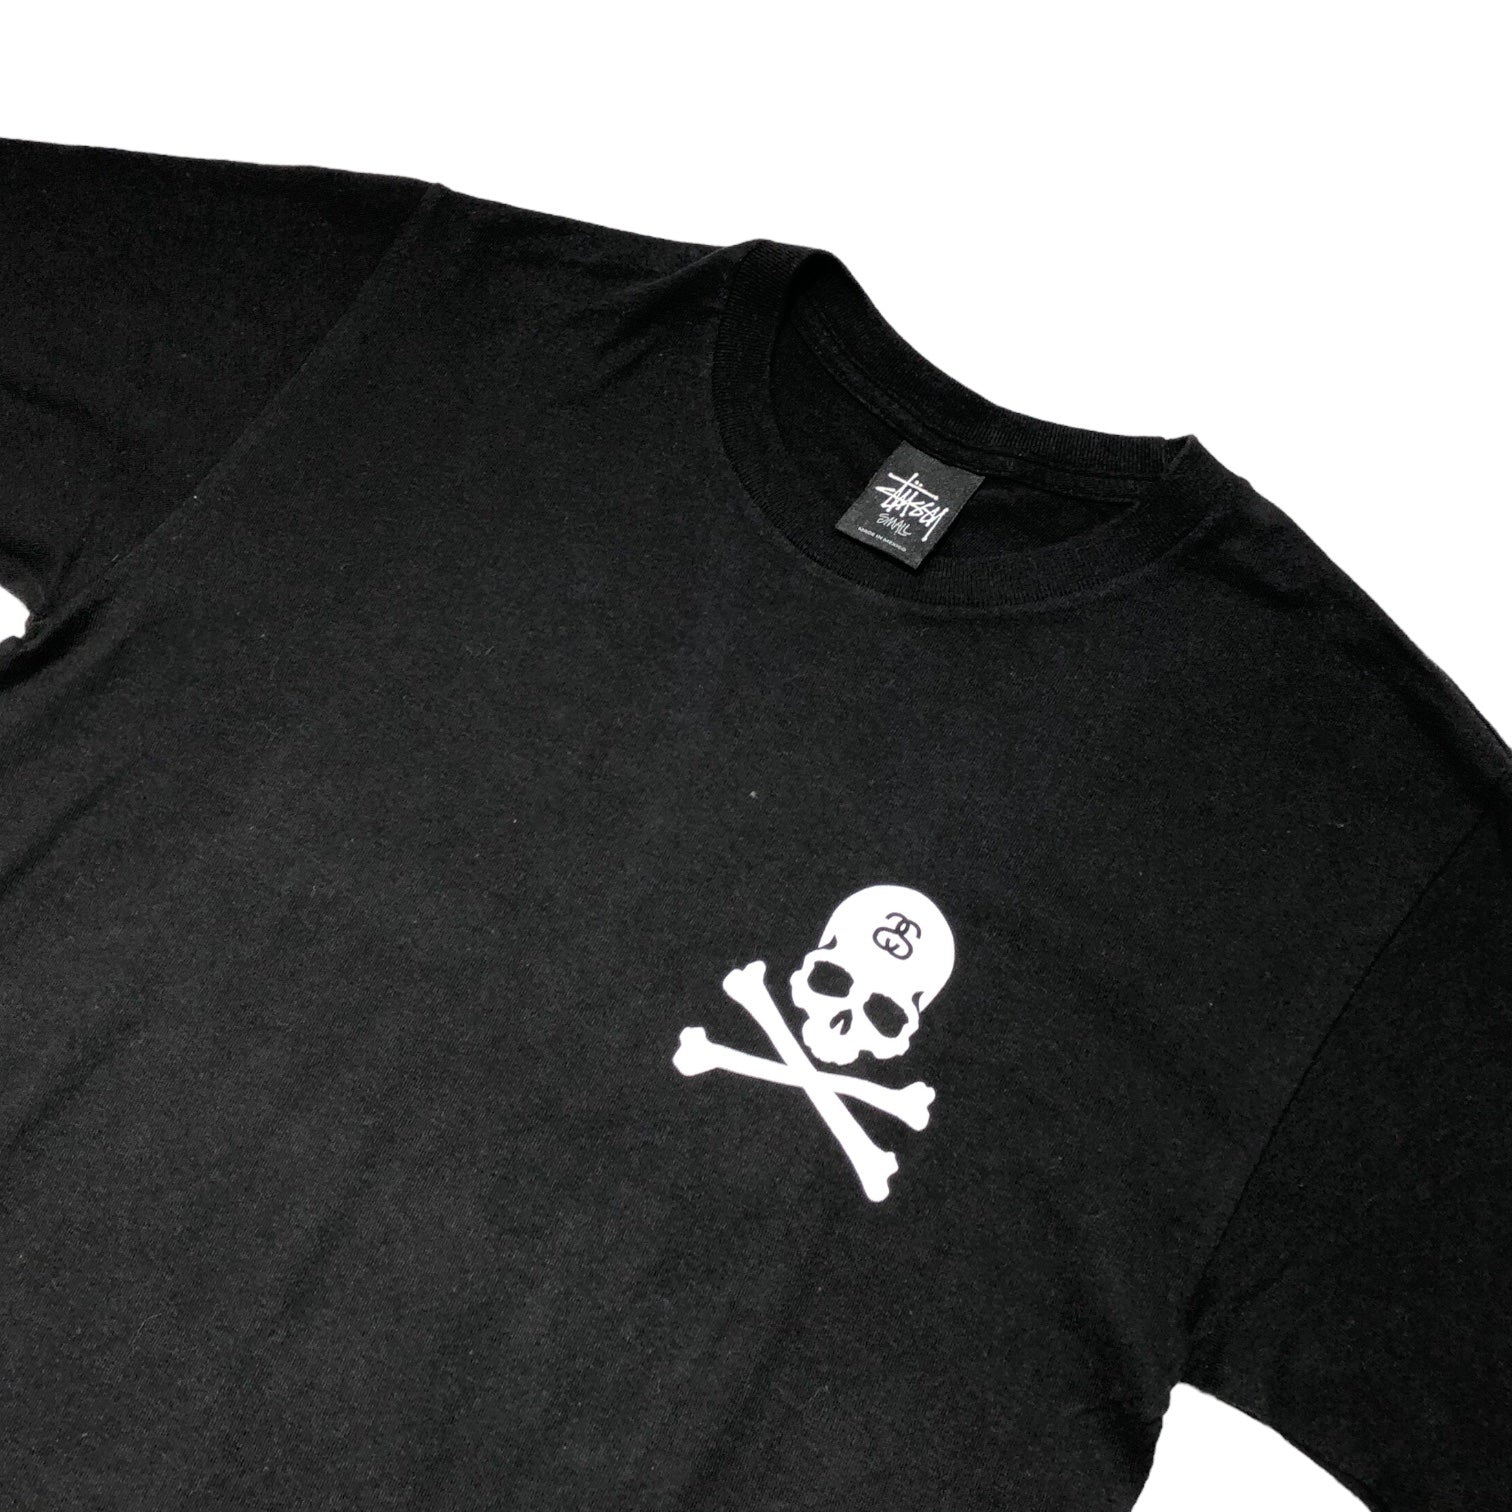 STUSSY(ステューシー) crossbone print t-shirt  クロスボーン プリント Tシャツ S ブラック×ホワイト